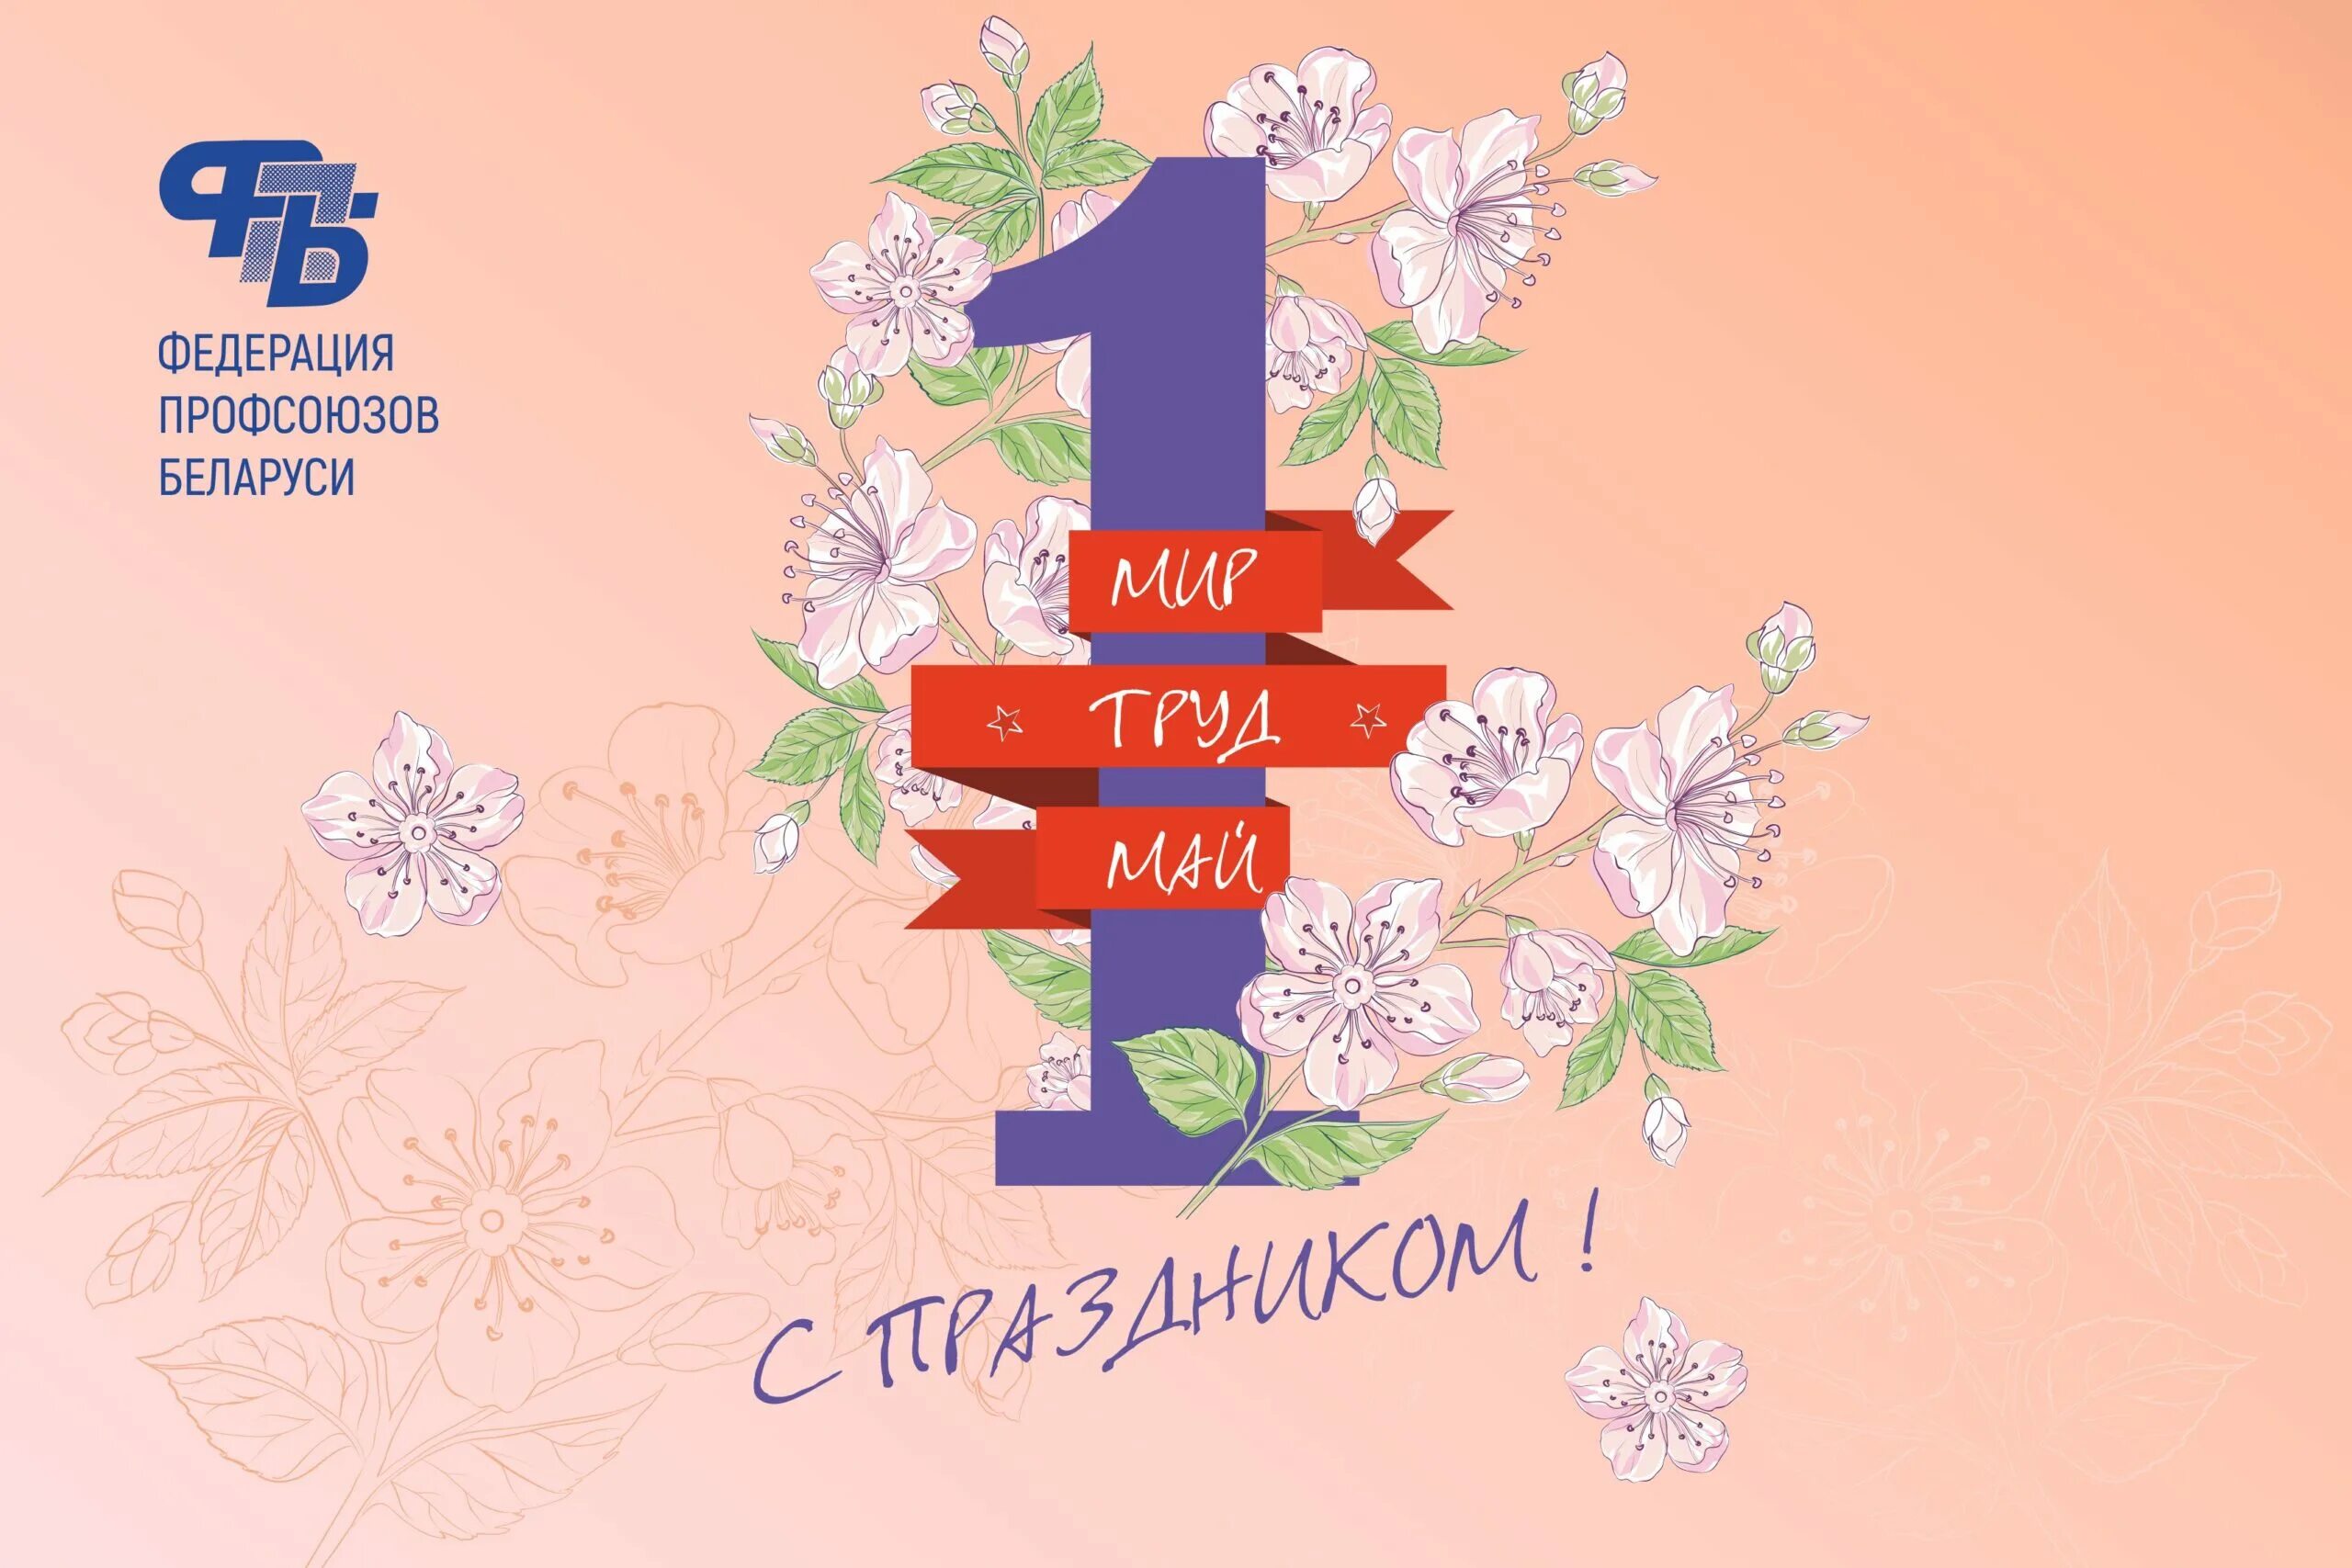 1 мая праздник в беларуси. 1 Мая. Праздник труда в Беларуси. Открытки с 1 мая. Поздравление с 1 мая РБ.